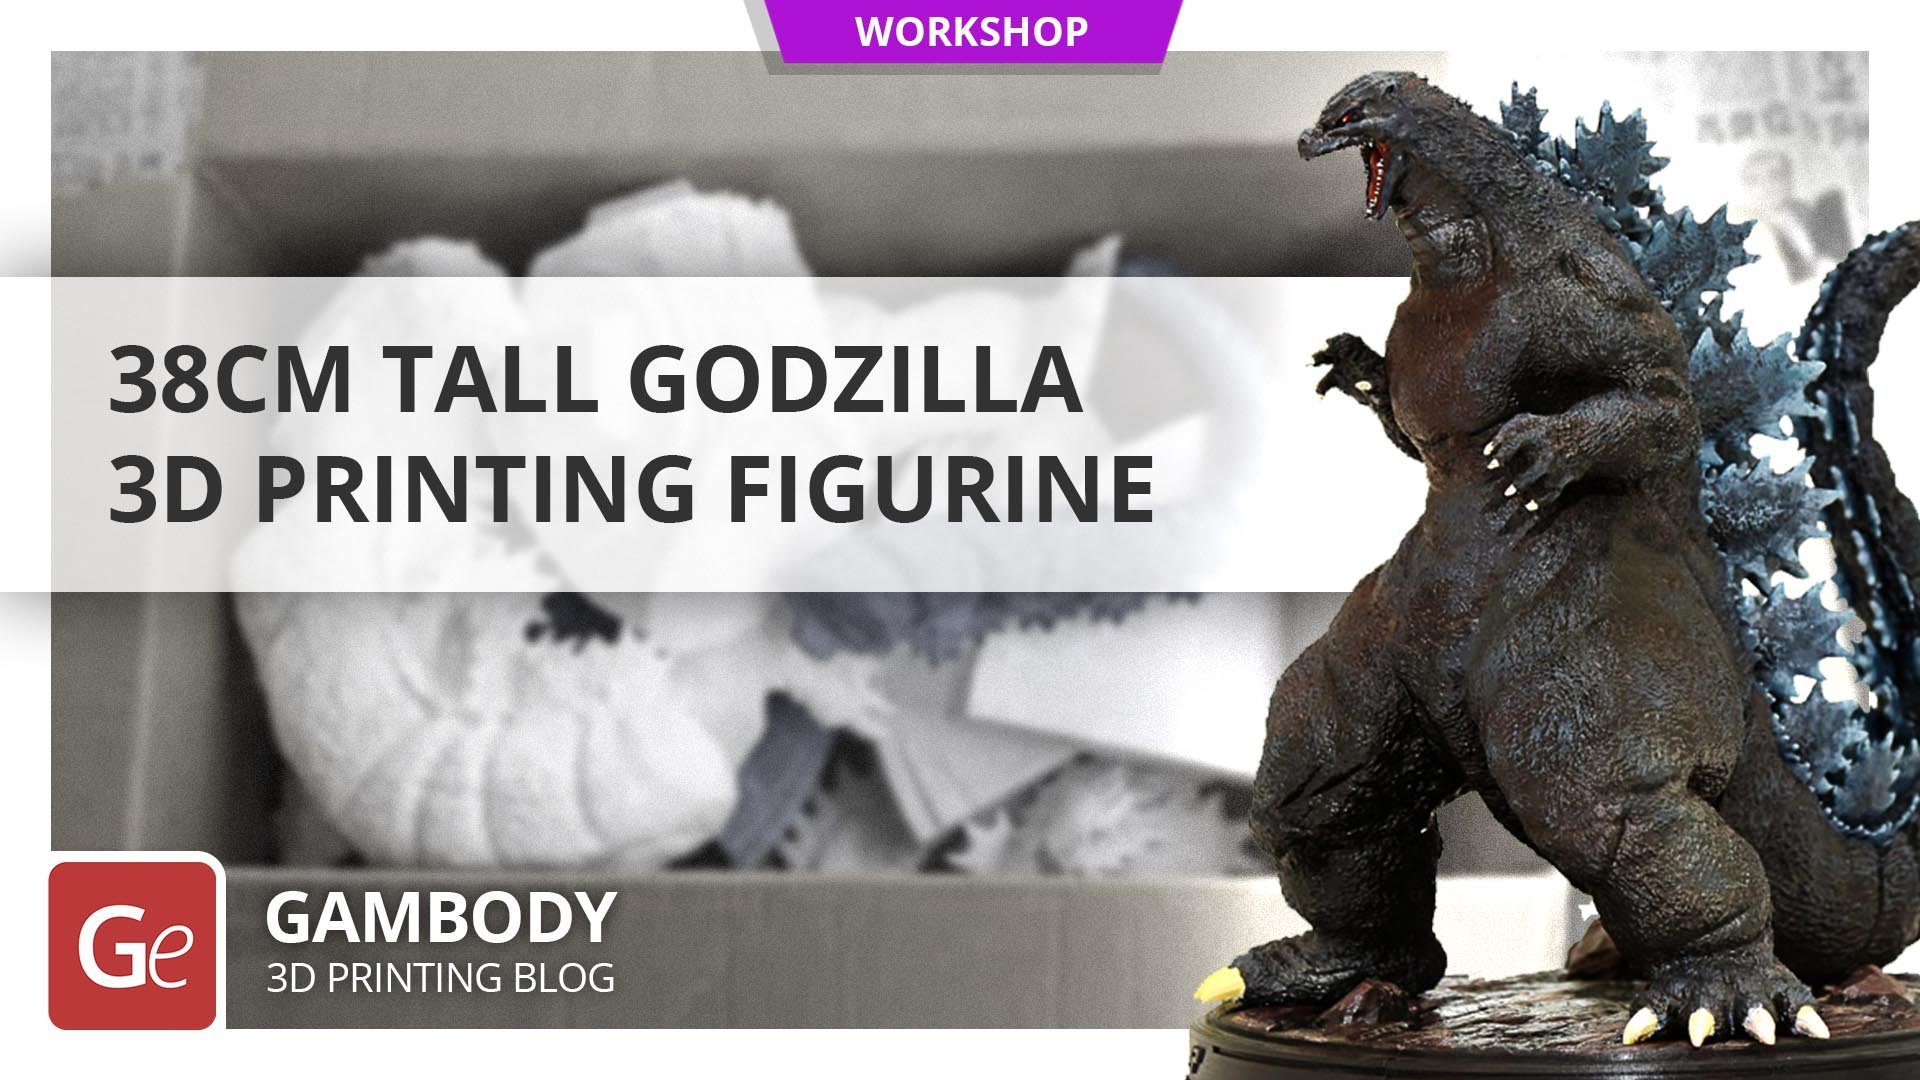 38cm Tall Godzilla 3D Printing Figurine